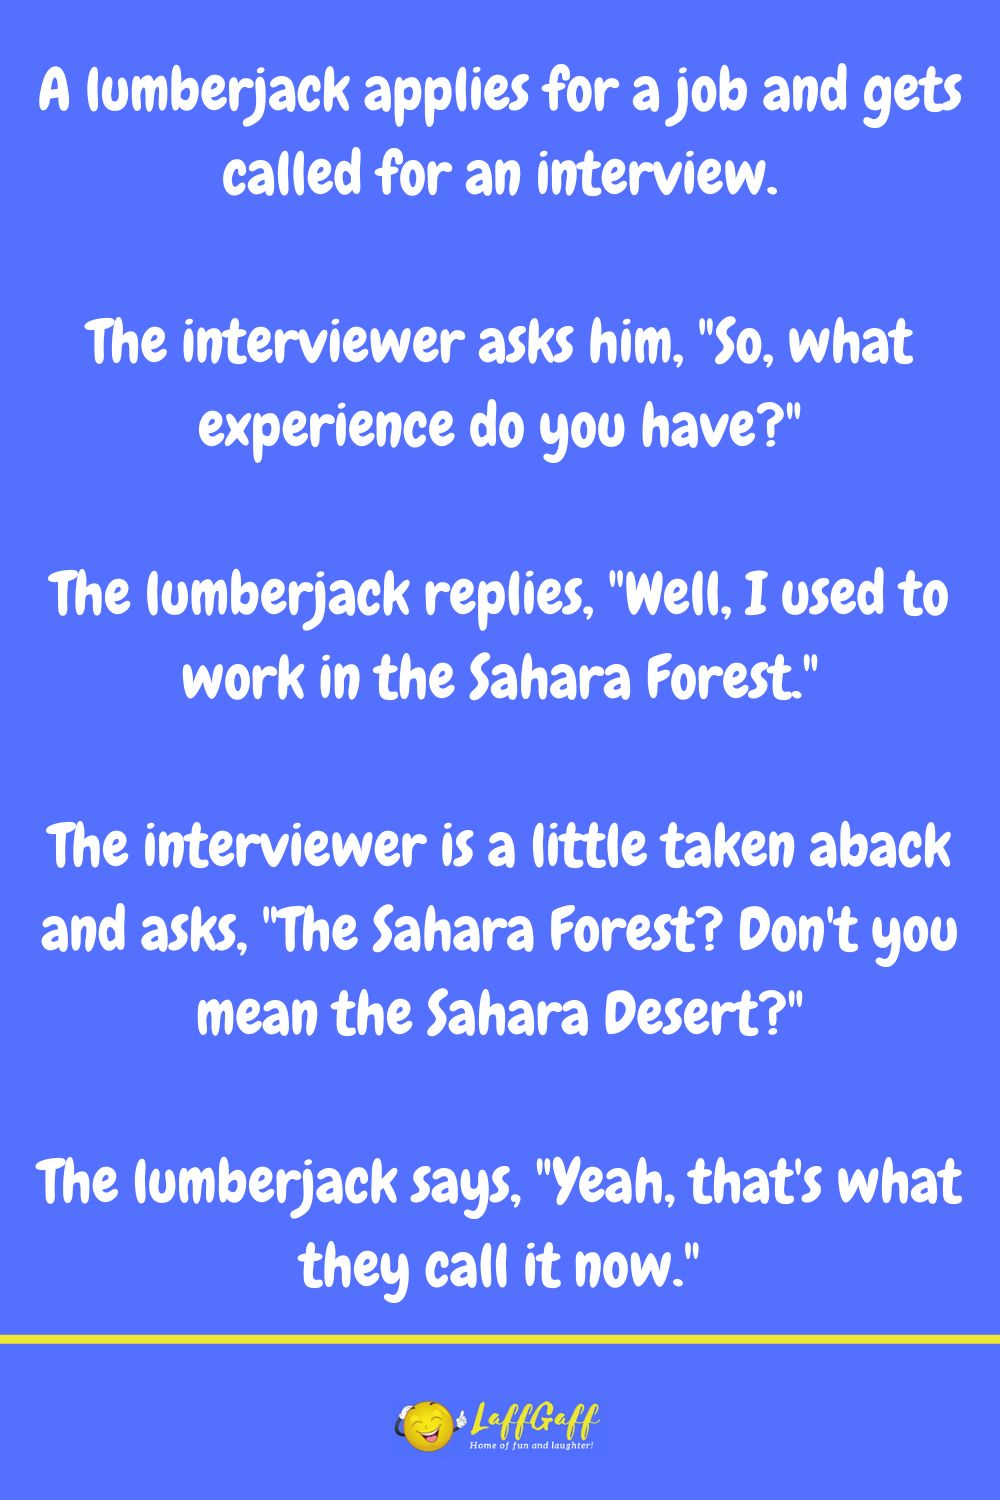 Lumberjack joke from LaffGaff.